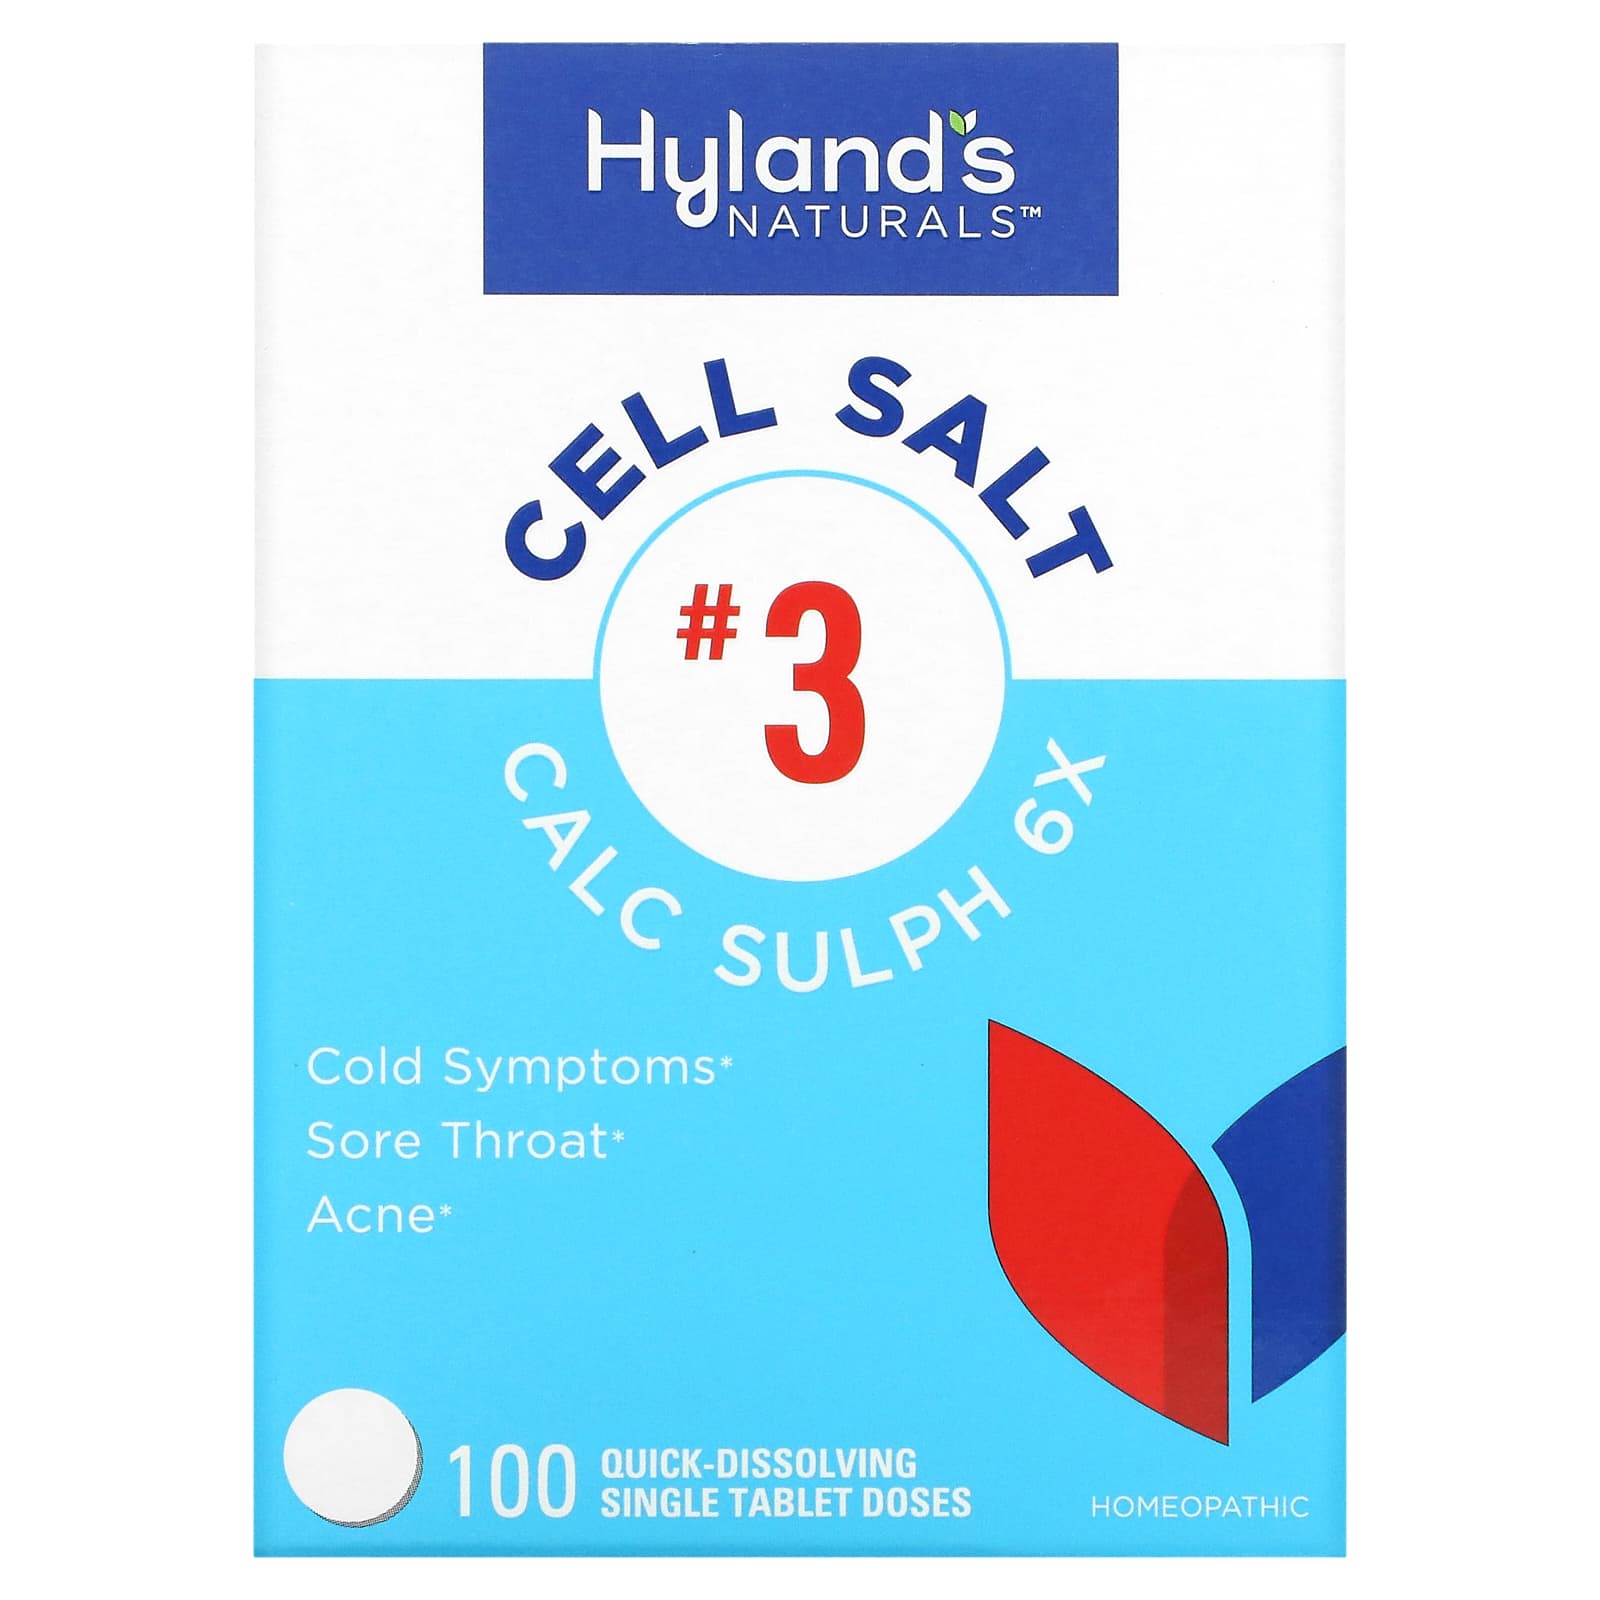 Клеточная Соль №3 / Кальций Сульфат 6X Hyland's, 100 быстрорастворимых таблеток hyland s клеточная соль 2 калькарея фосфорика calc phos 6x 100 отдельных быстрорастворимых таблеток